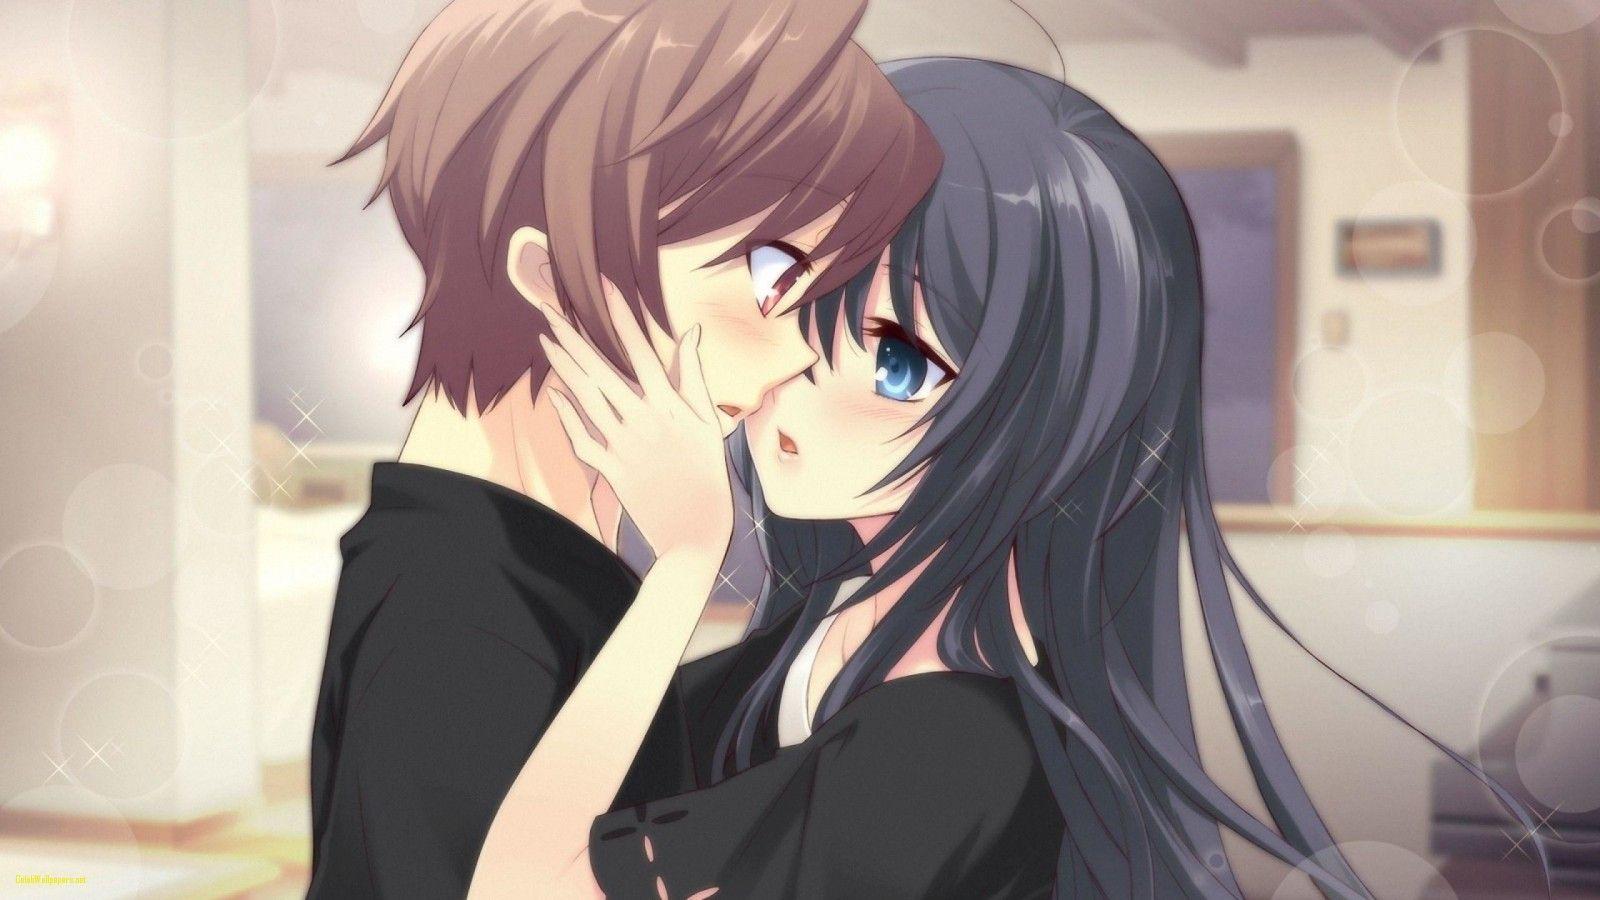 30+ Best Romantic Anime Movies To Watch | Sad, Romance, Anime, Love Story  Movies